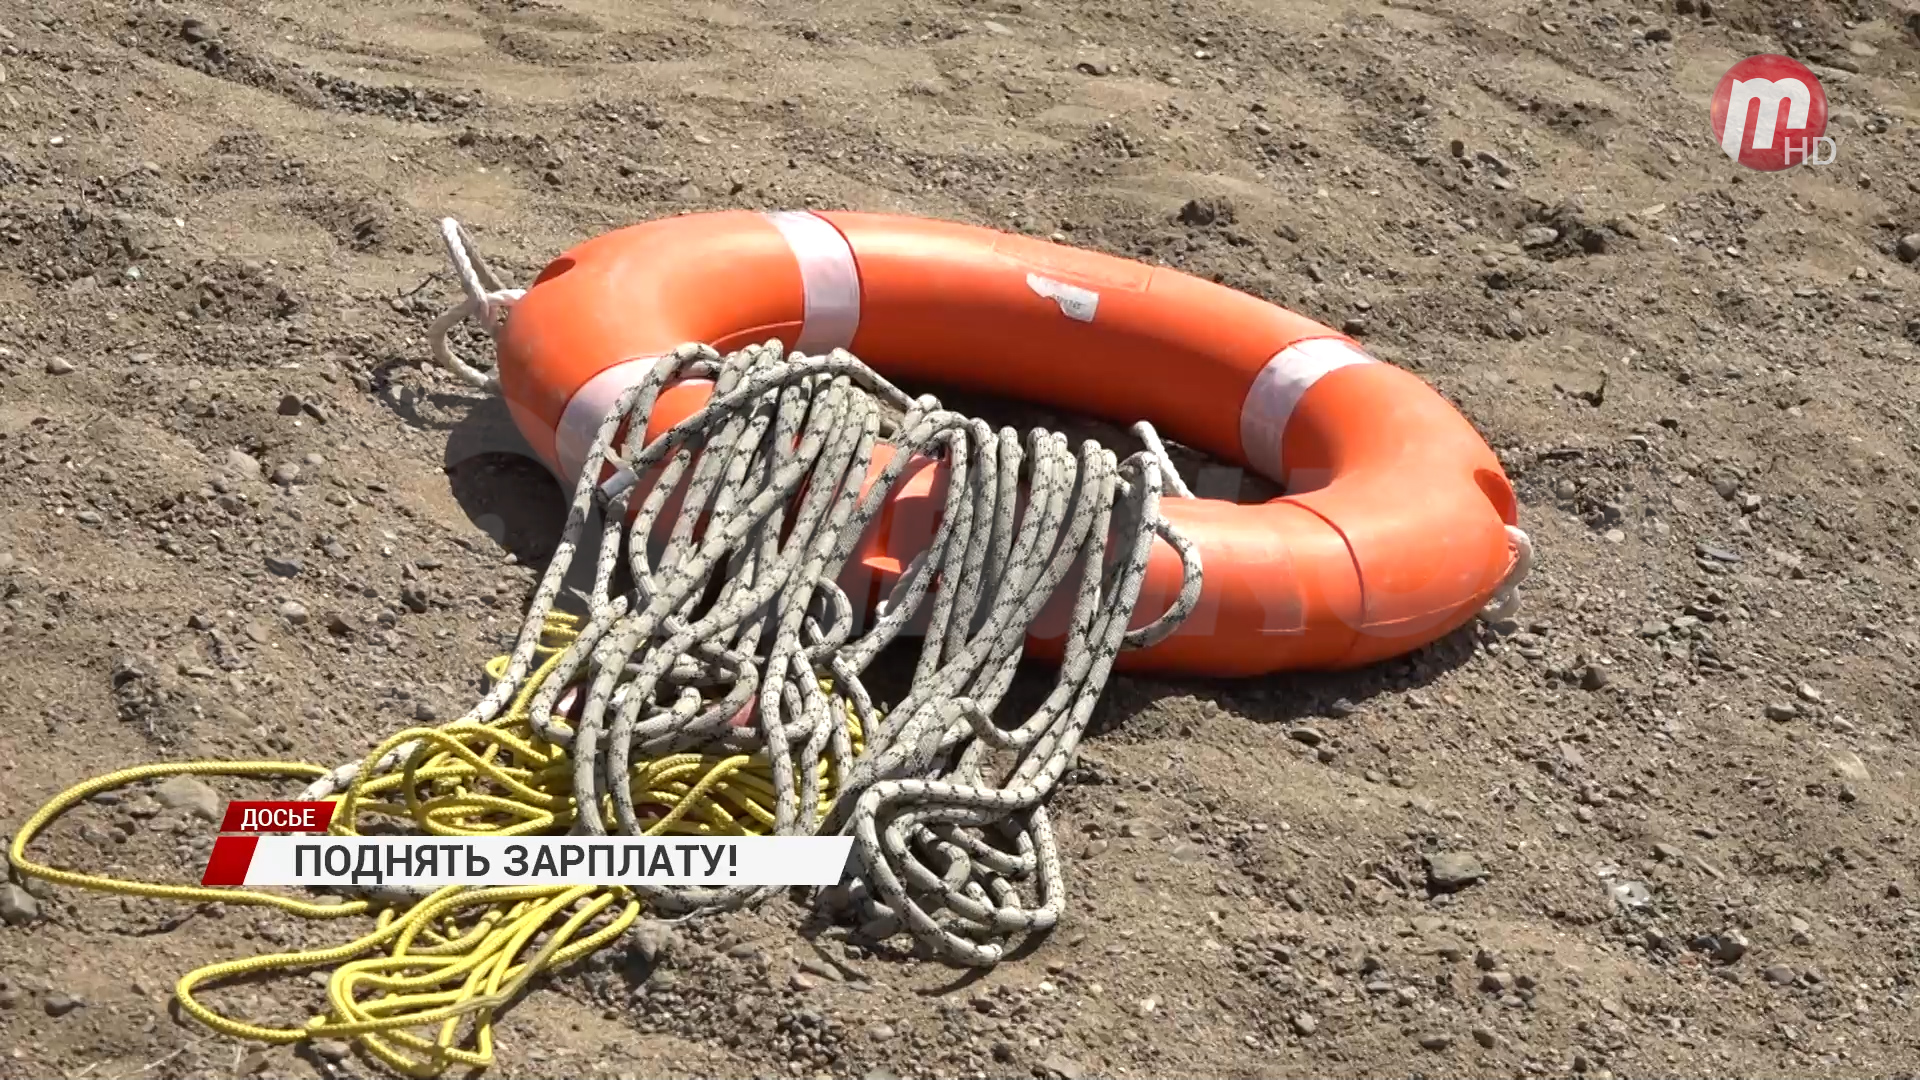 Спасатели Бурятской республиканской поисково-спасательной службы записали видеообращение в адрес Алексея Цыденова